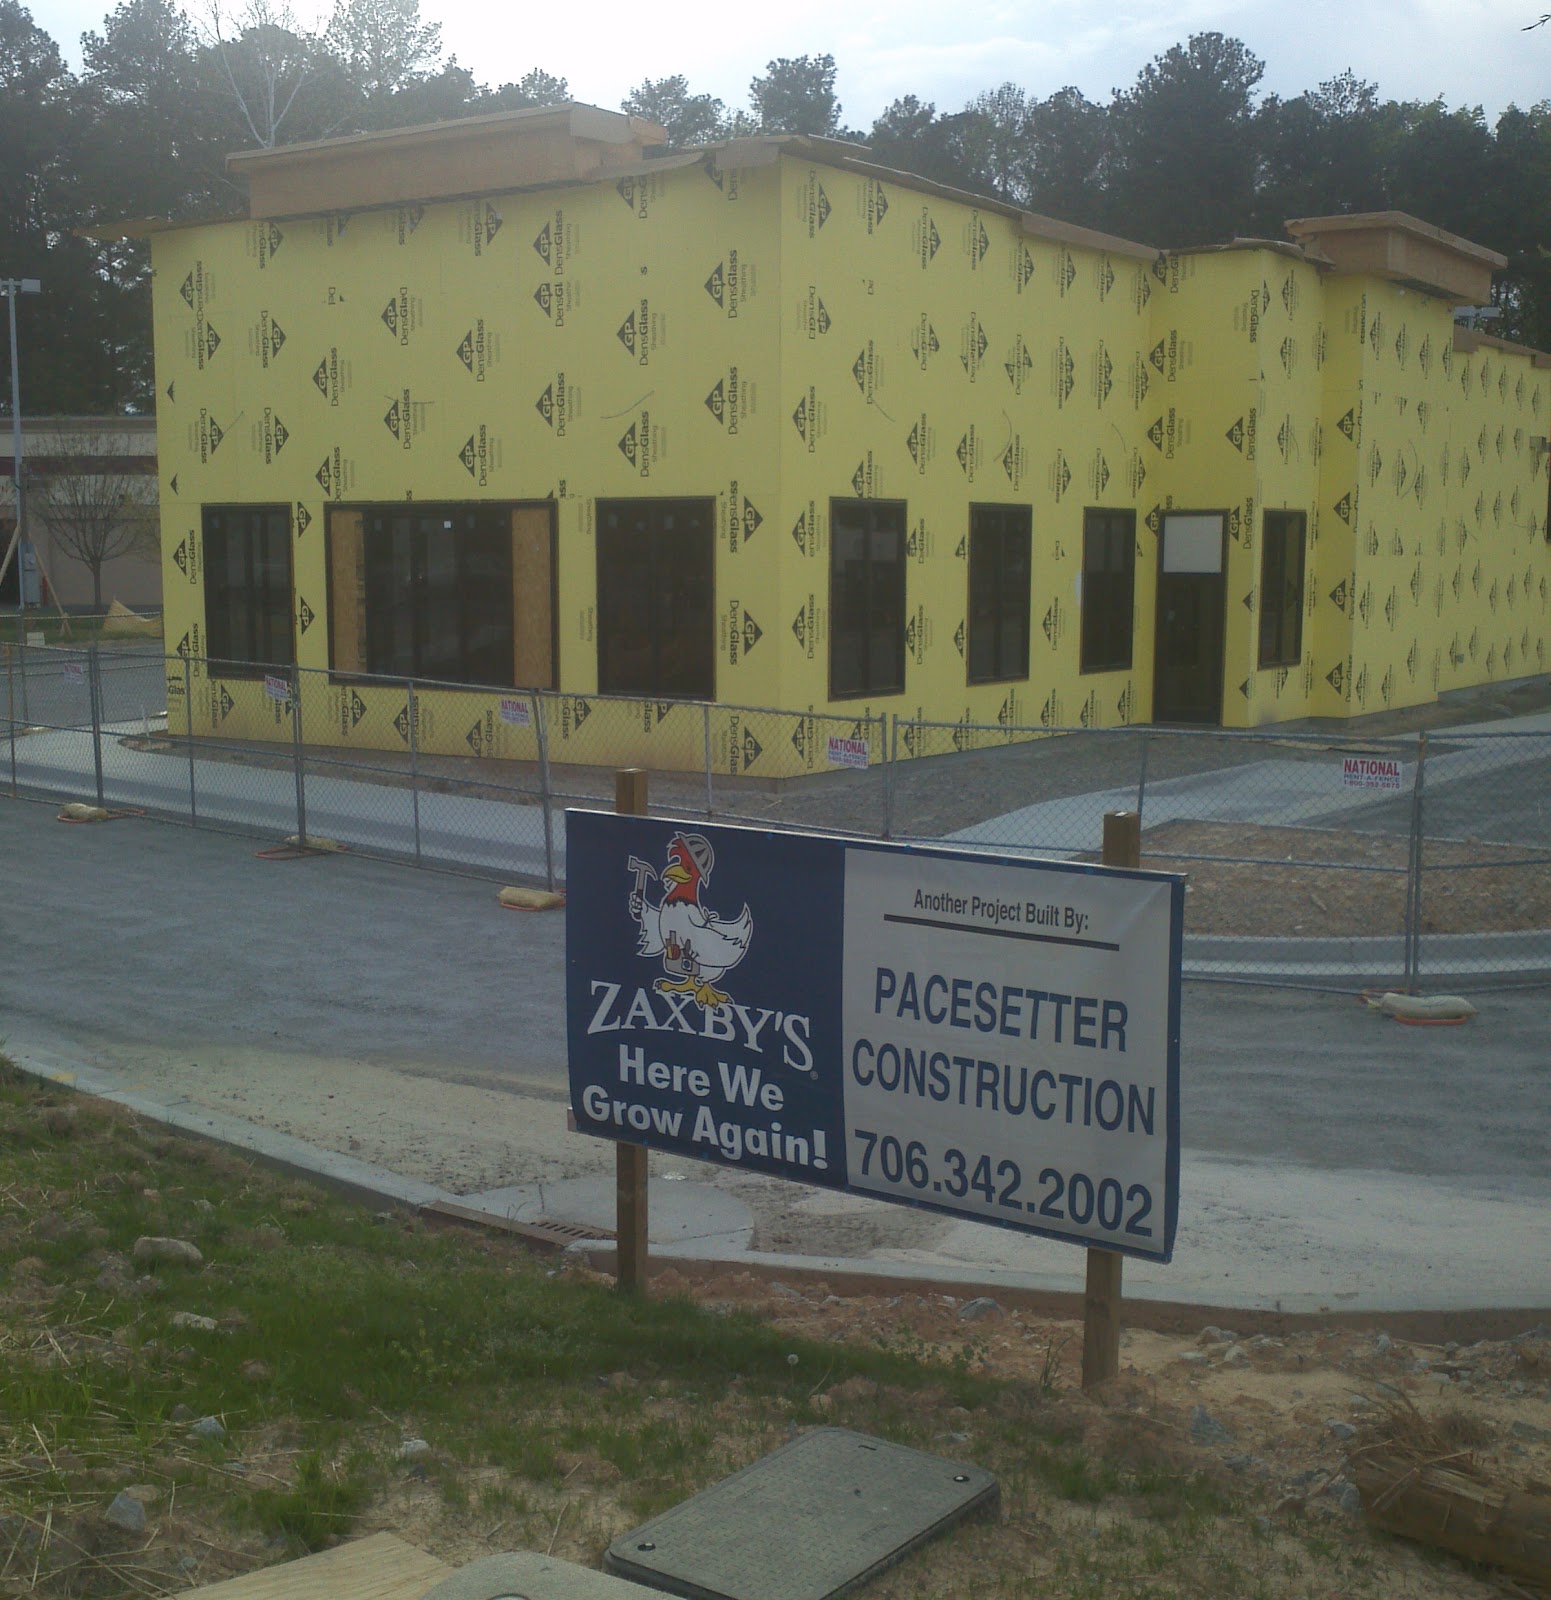 Tomorrow's News Today - Atlanta: New Zaxby's in Chamblee May Finally